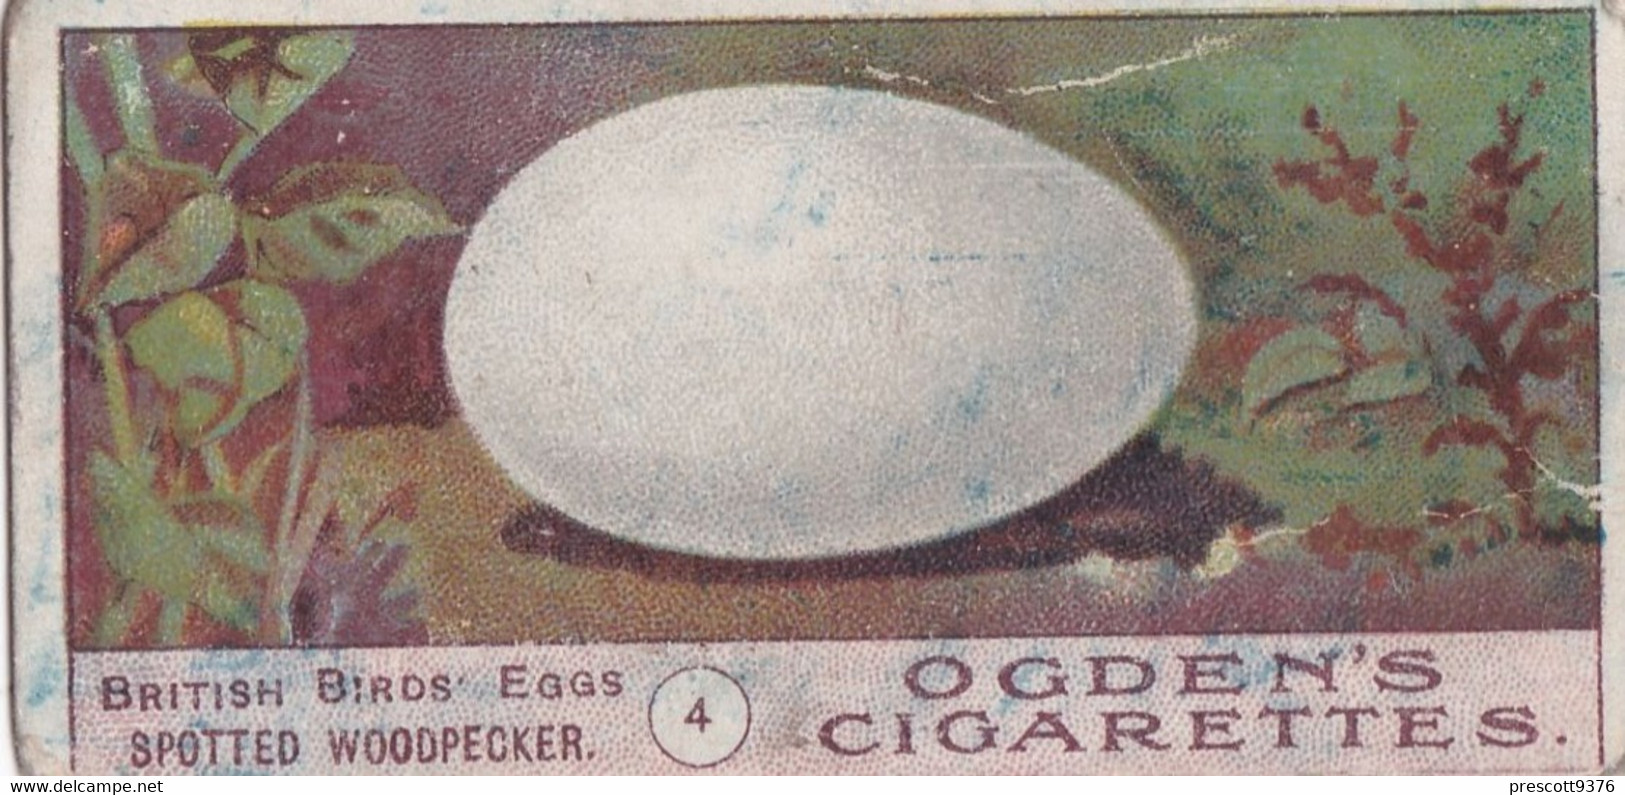 Birds Eggs 1908  - Ogdens  Cigarette Card - Original - Antique - 4 Spotted Woodpecker - Ogden's